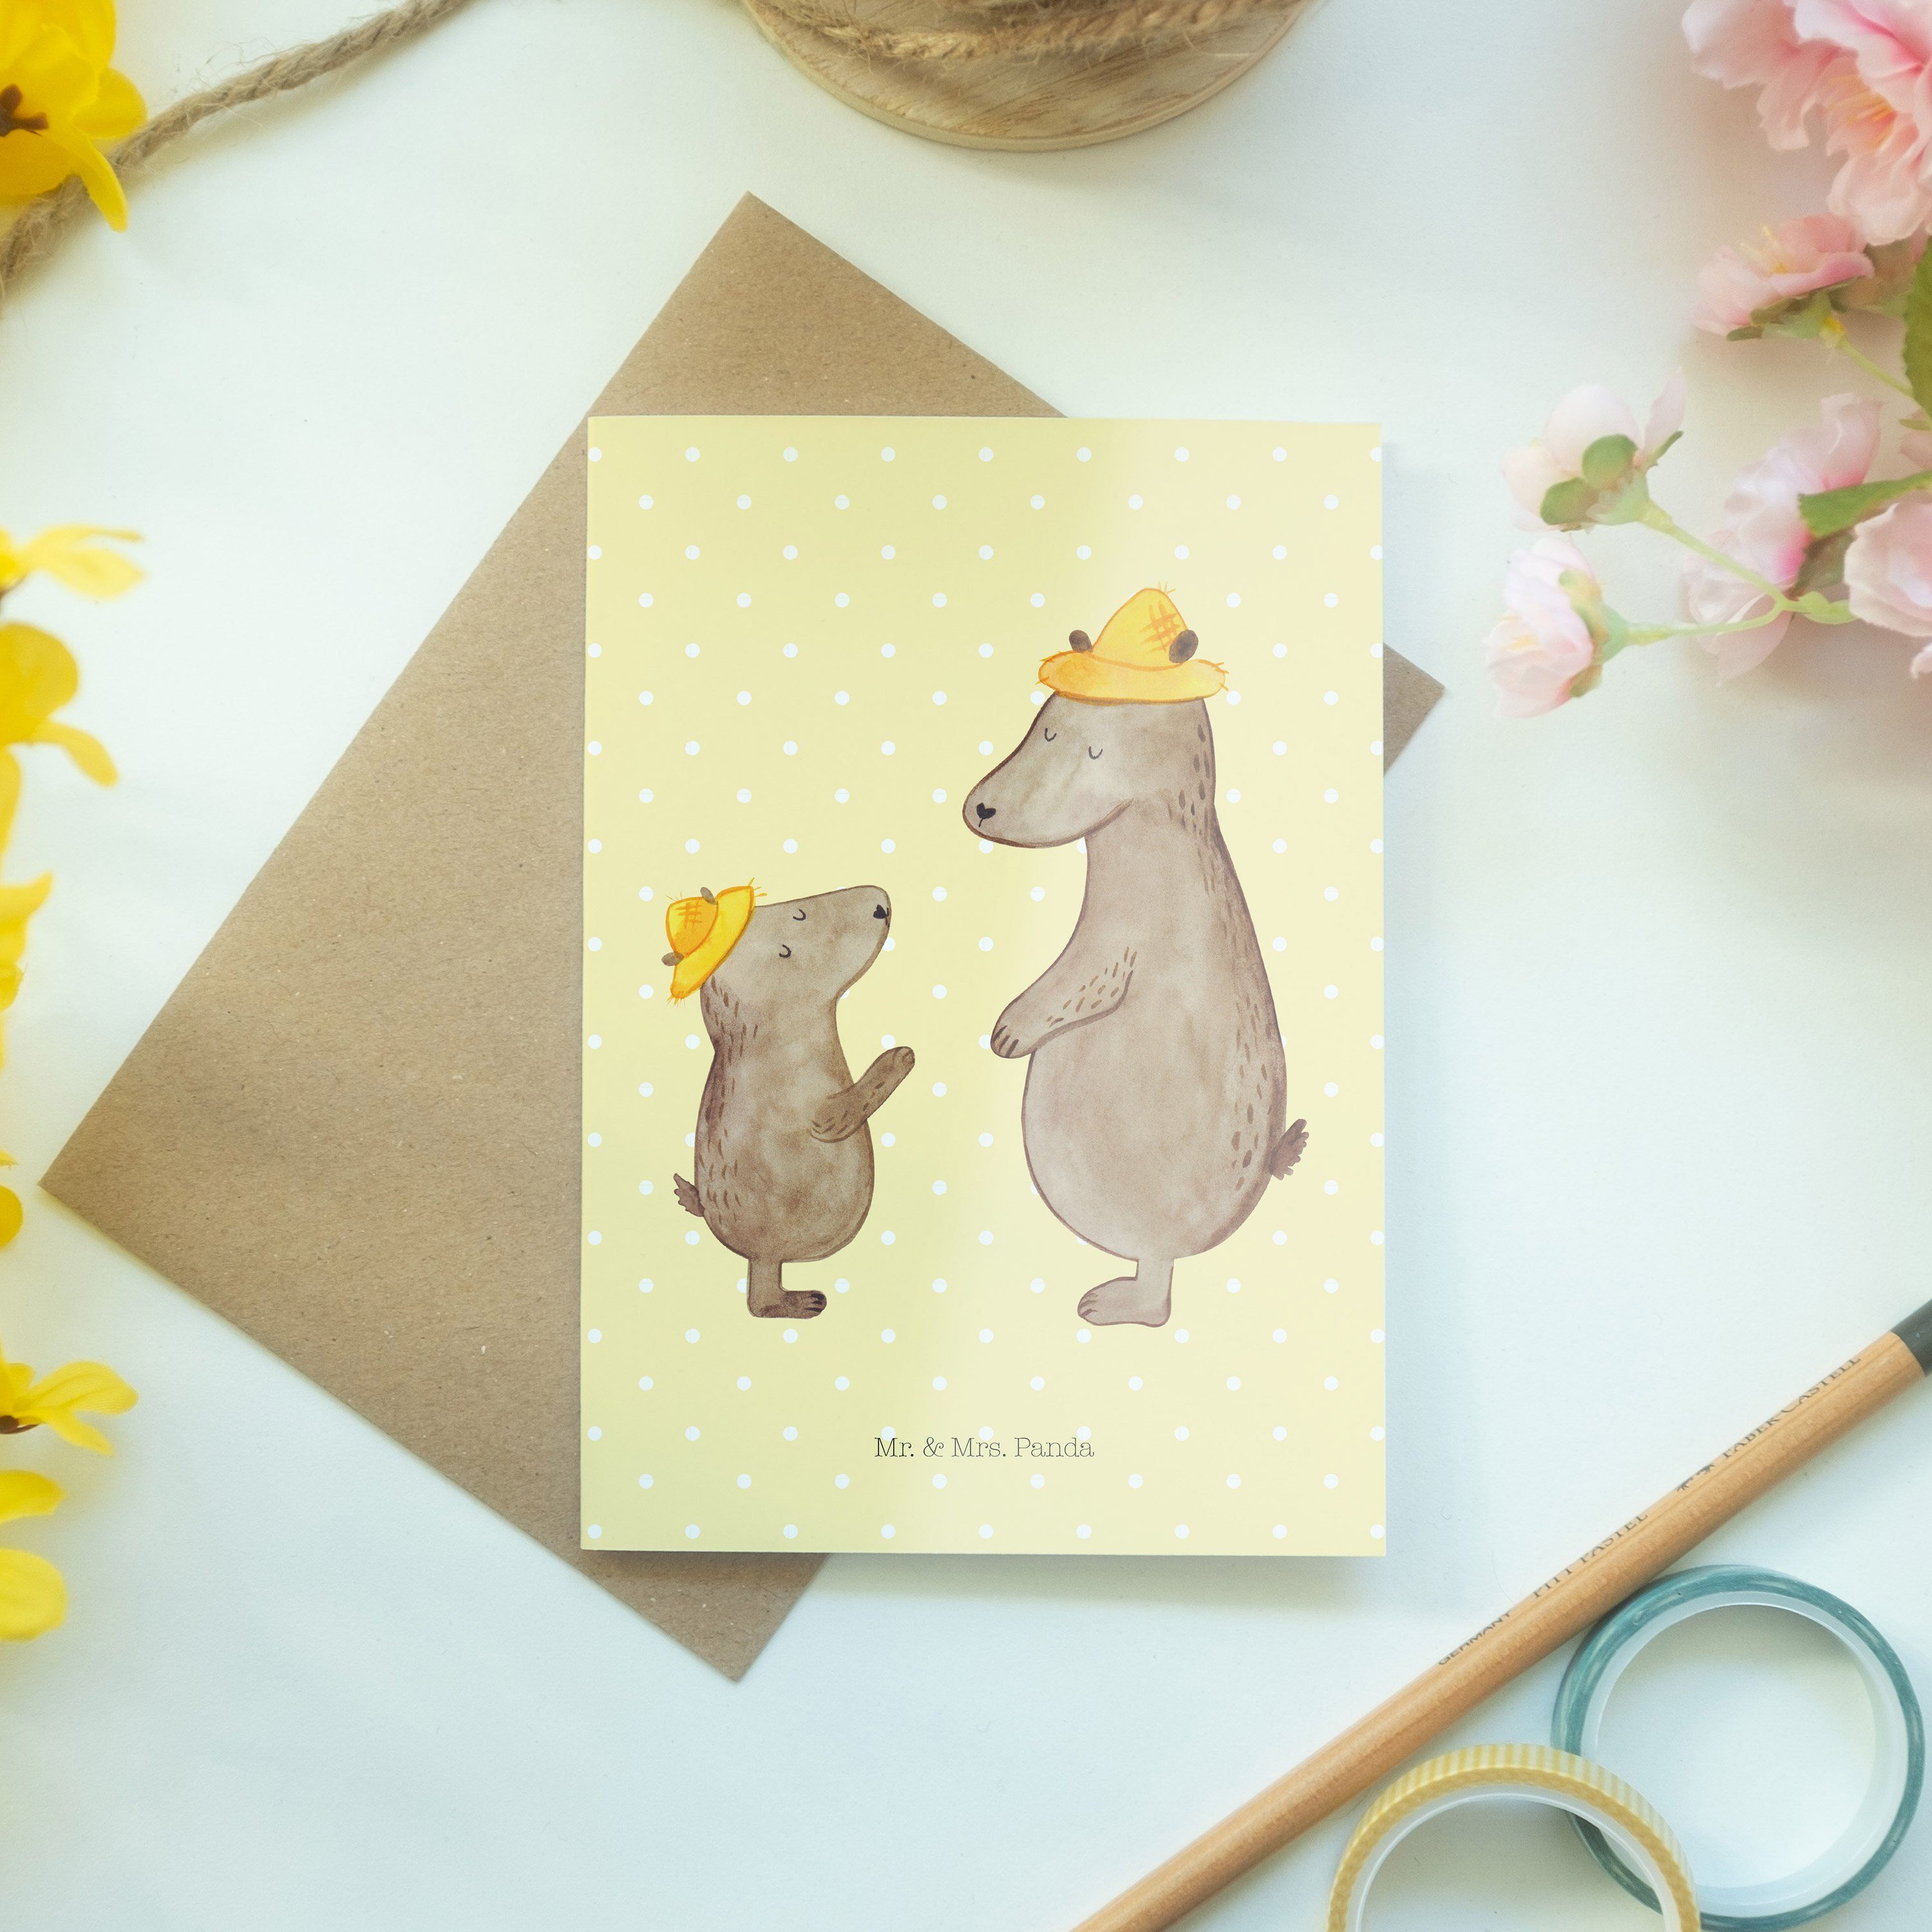 mit Mr. Mrs. & Opa, Hut Pastell Grußkarte - Geschenk, Geburtstagskarte, Bären Gelb Panda - Hochz